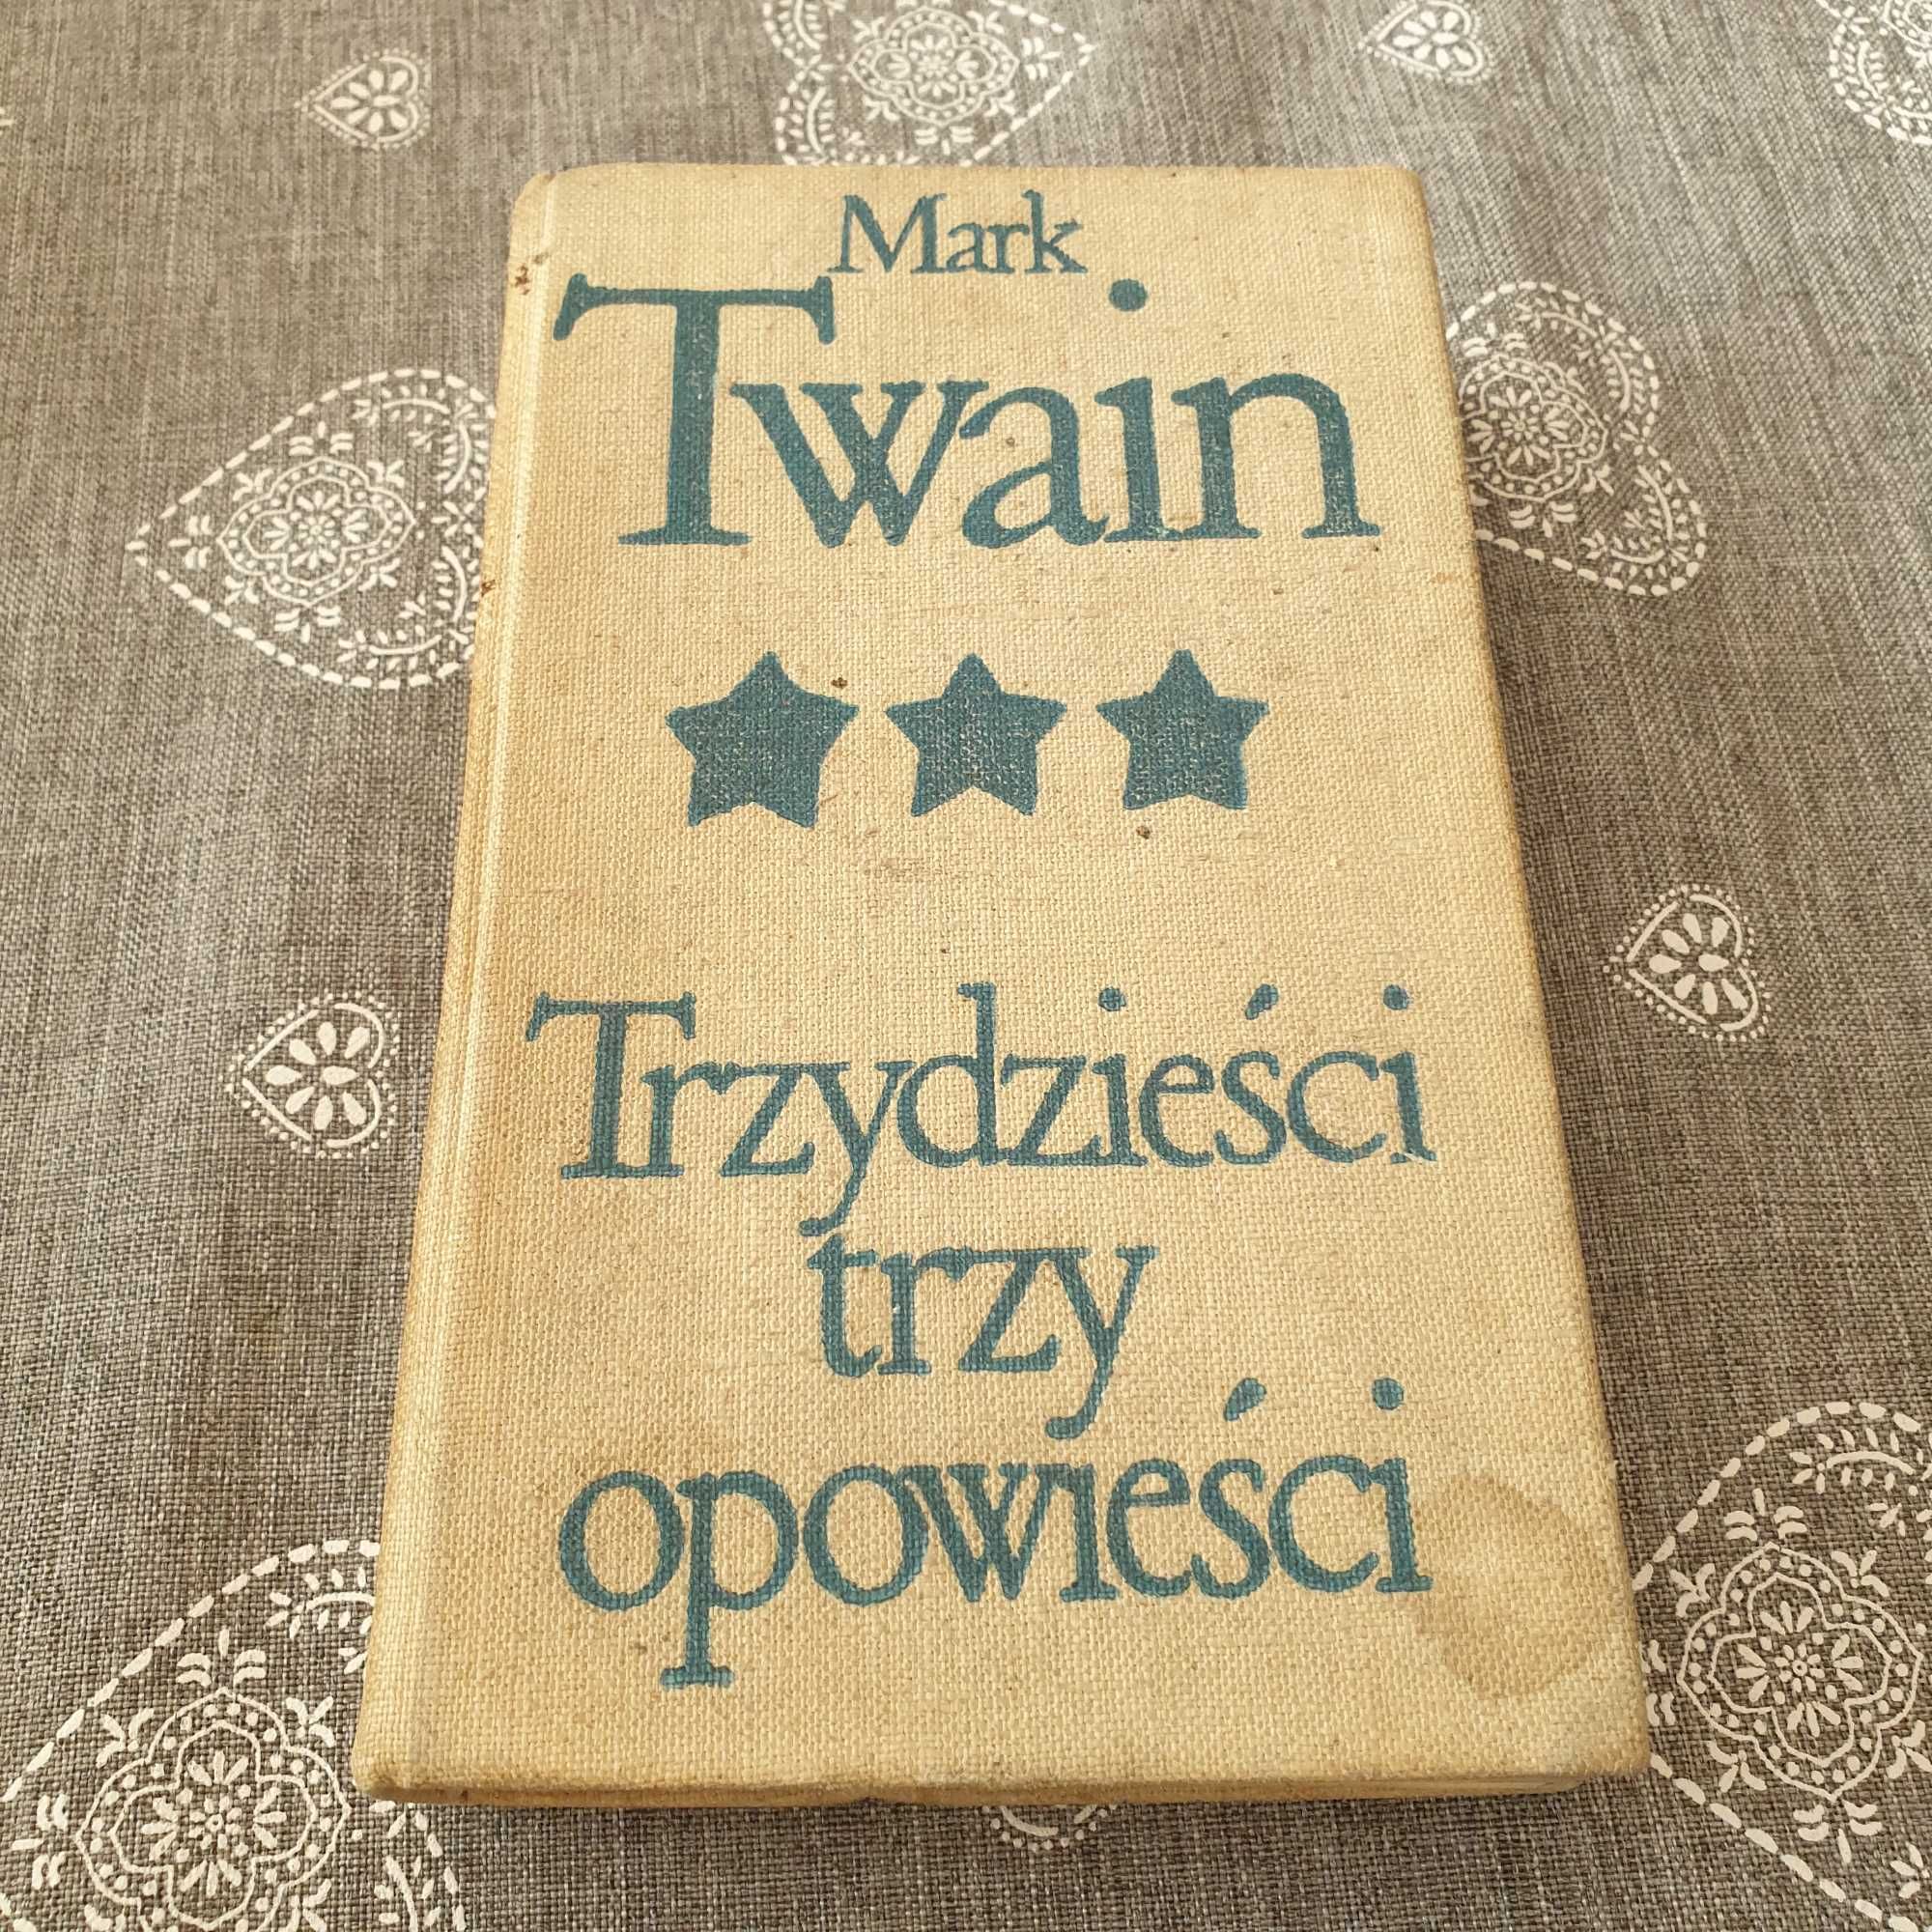 Książka - "Trzydzieści trzy opowieści" - Mark Twain